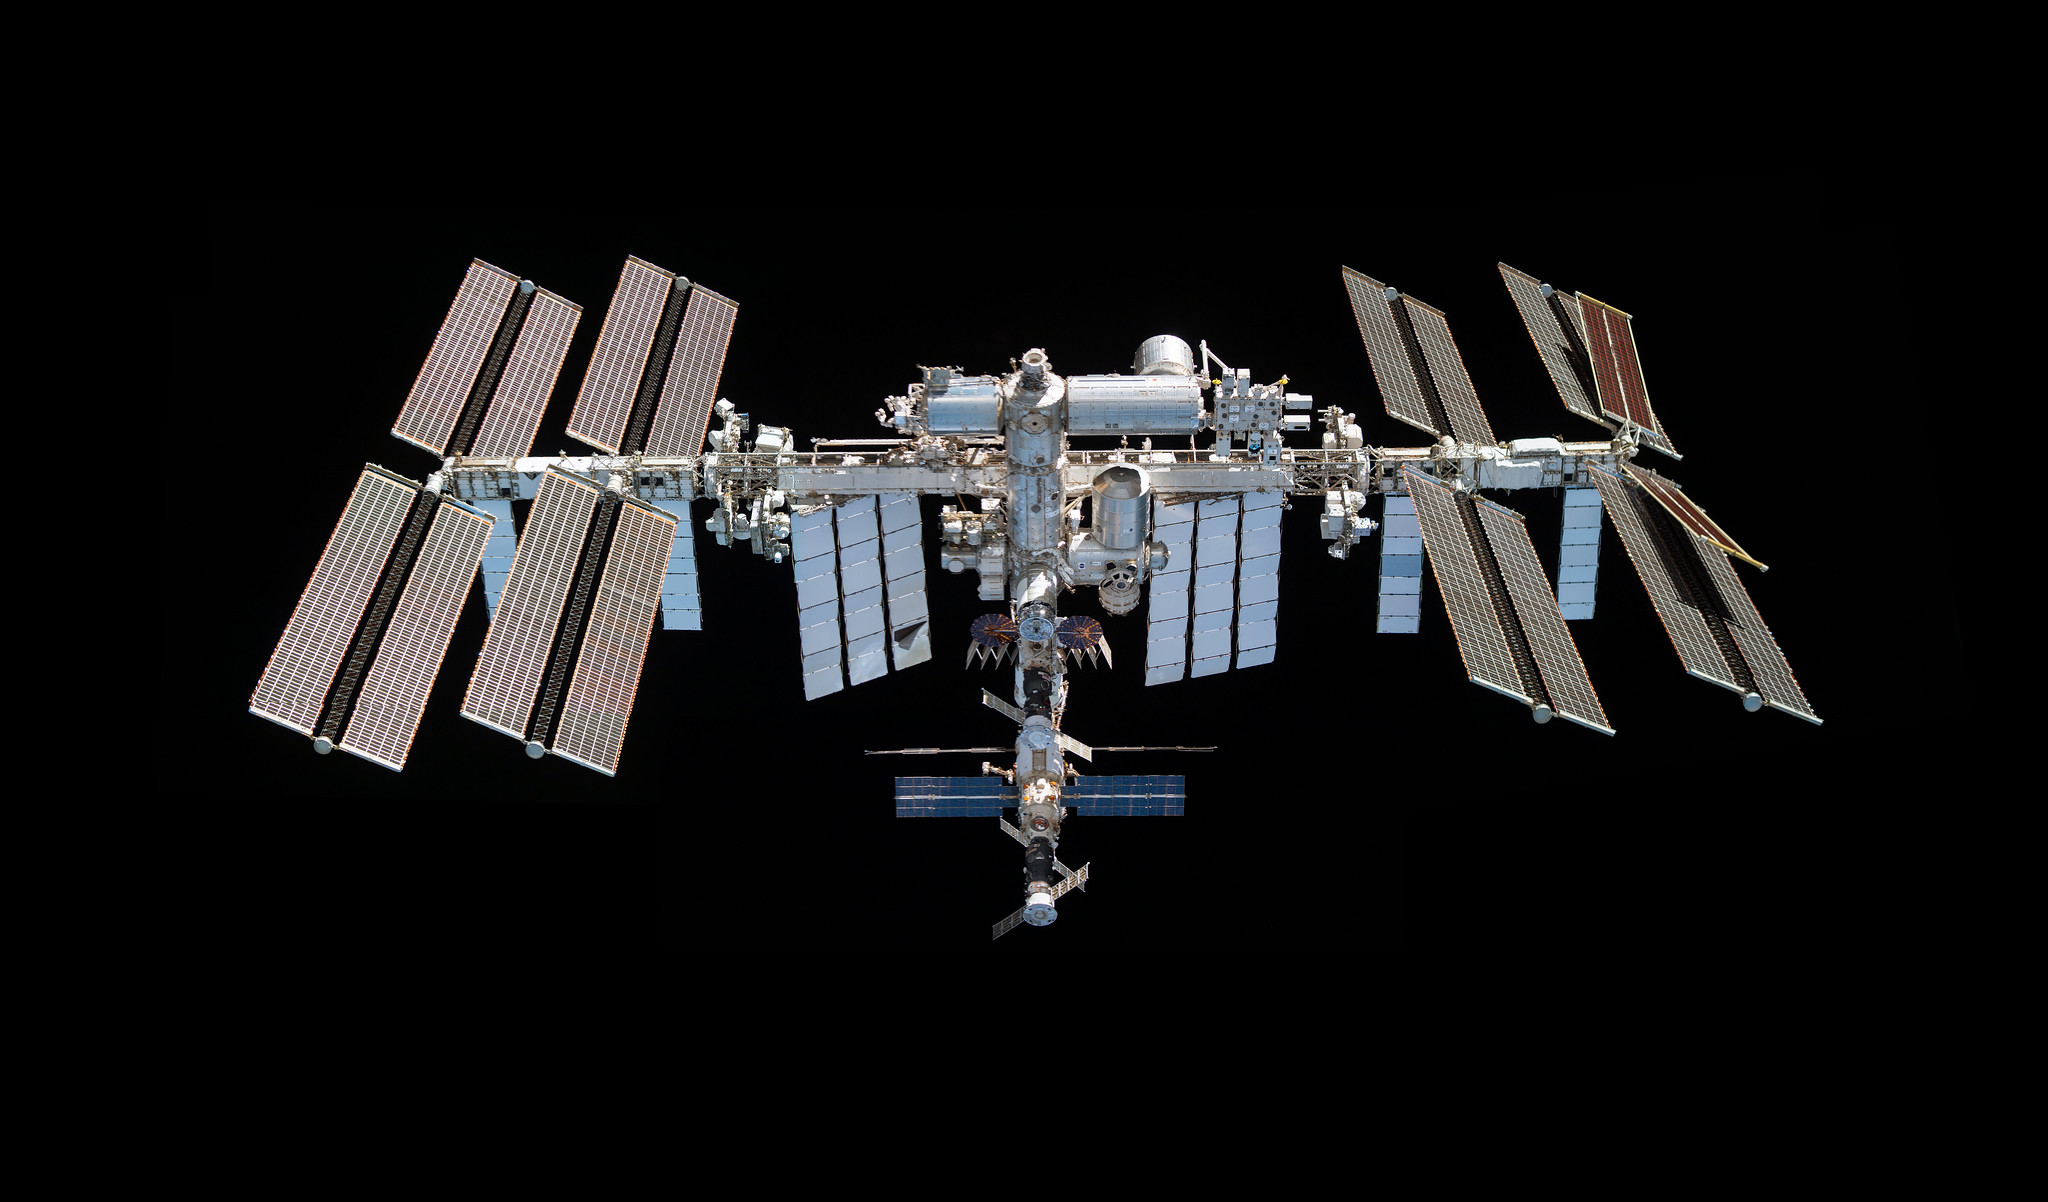 La Estación Espacial Internacional se enfrenta a su incierto futuro tras 25 años en órbita